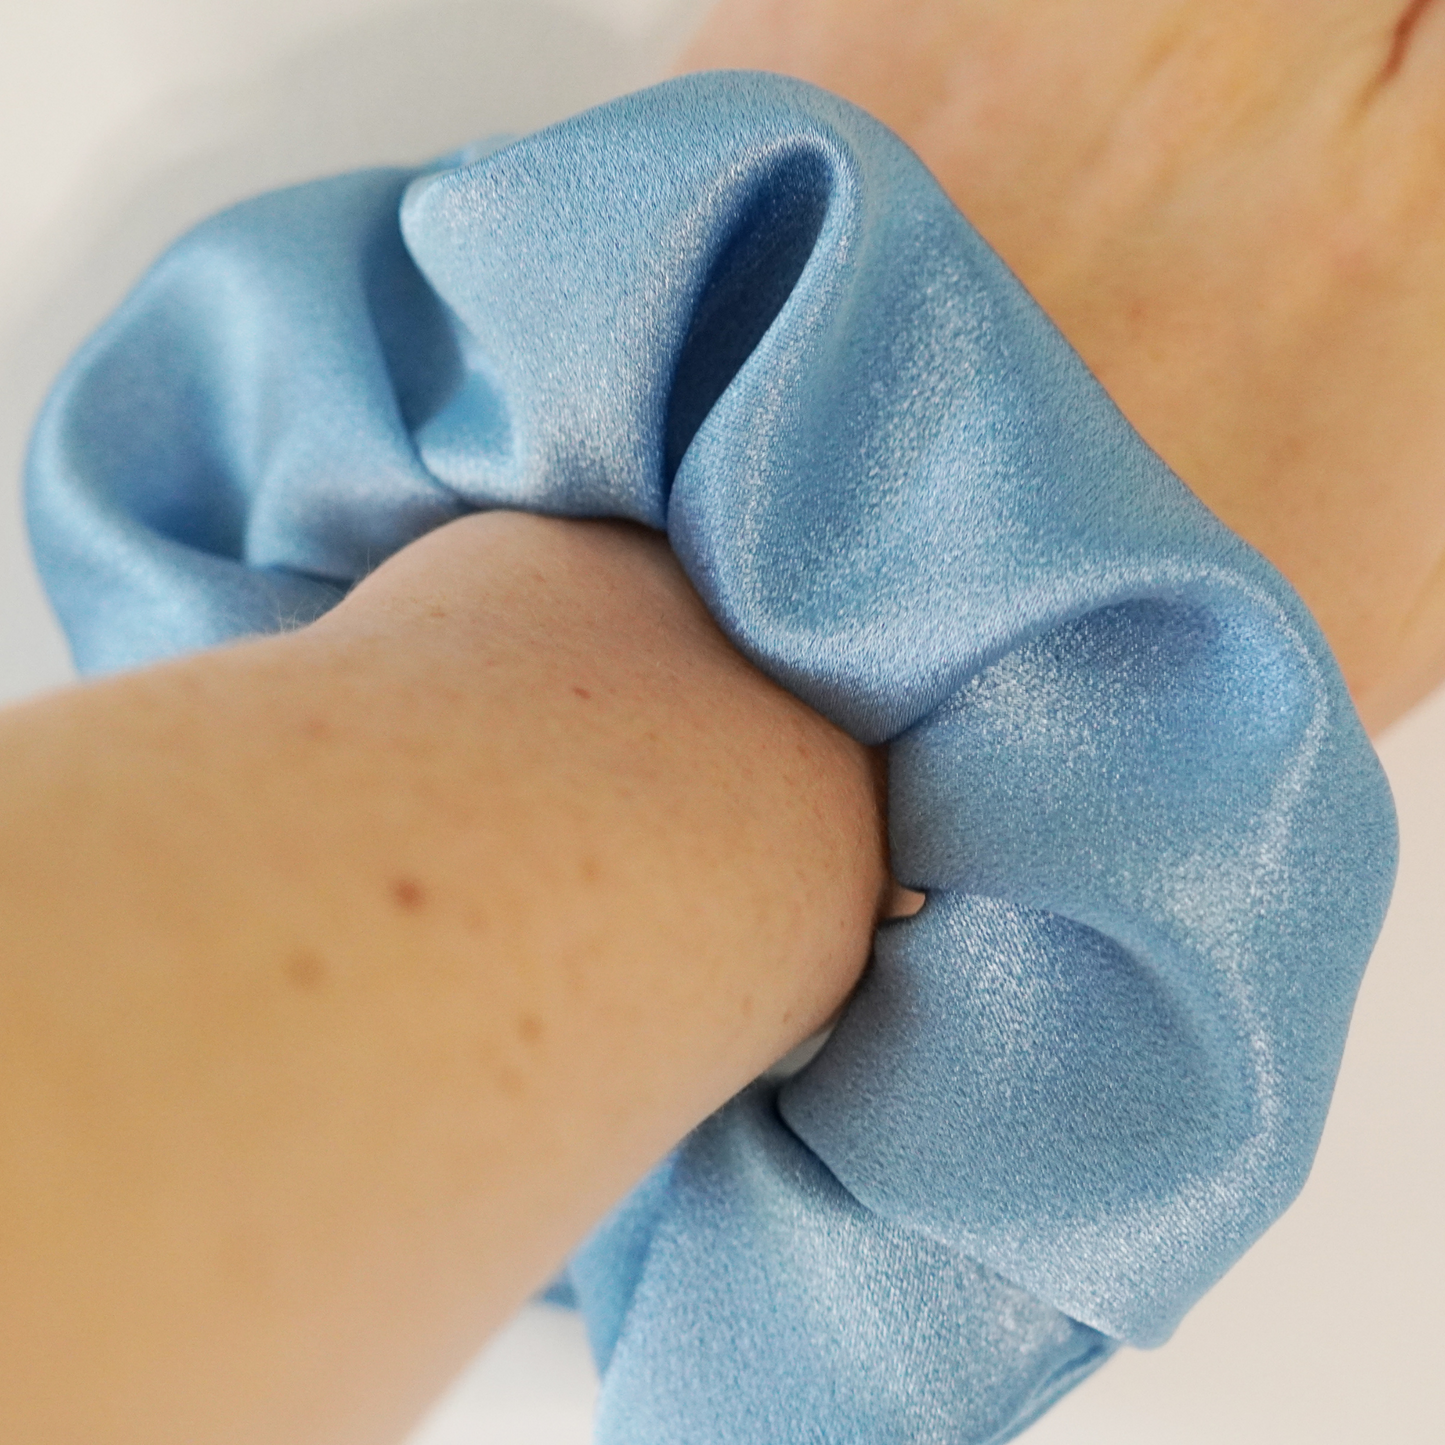 Blue satin scrunchie on wrist